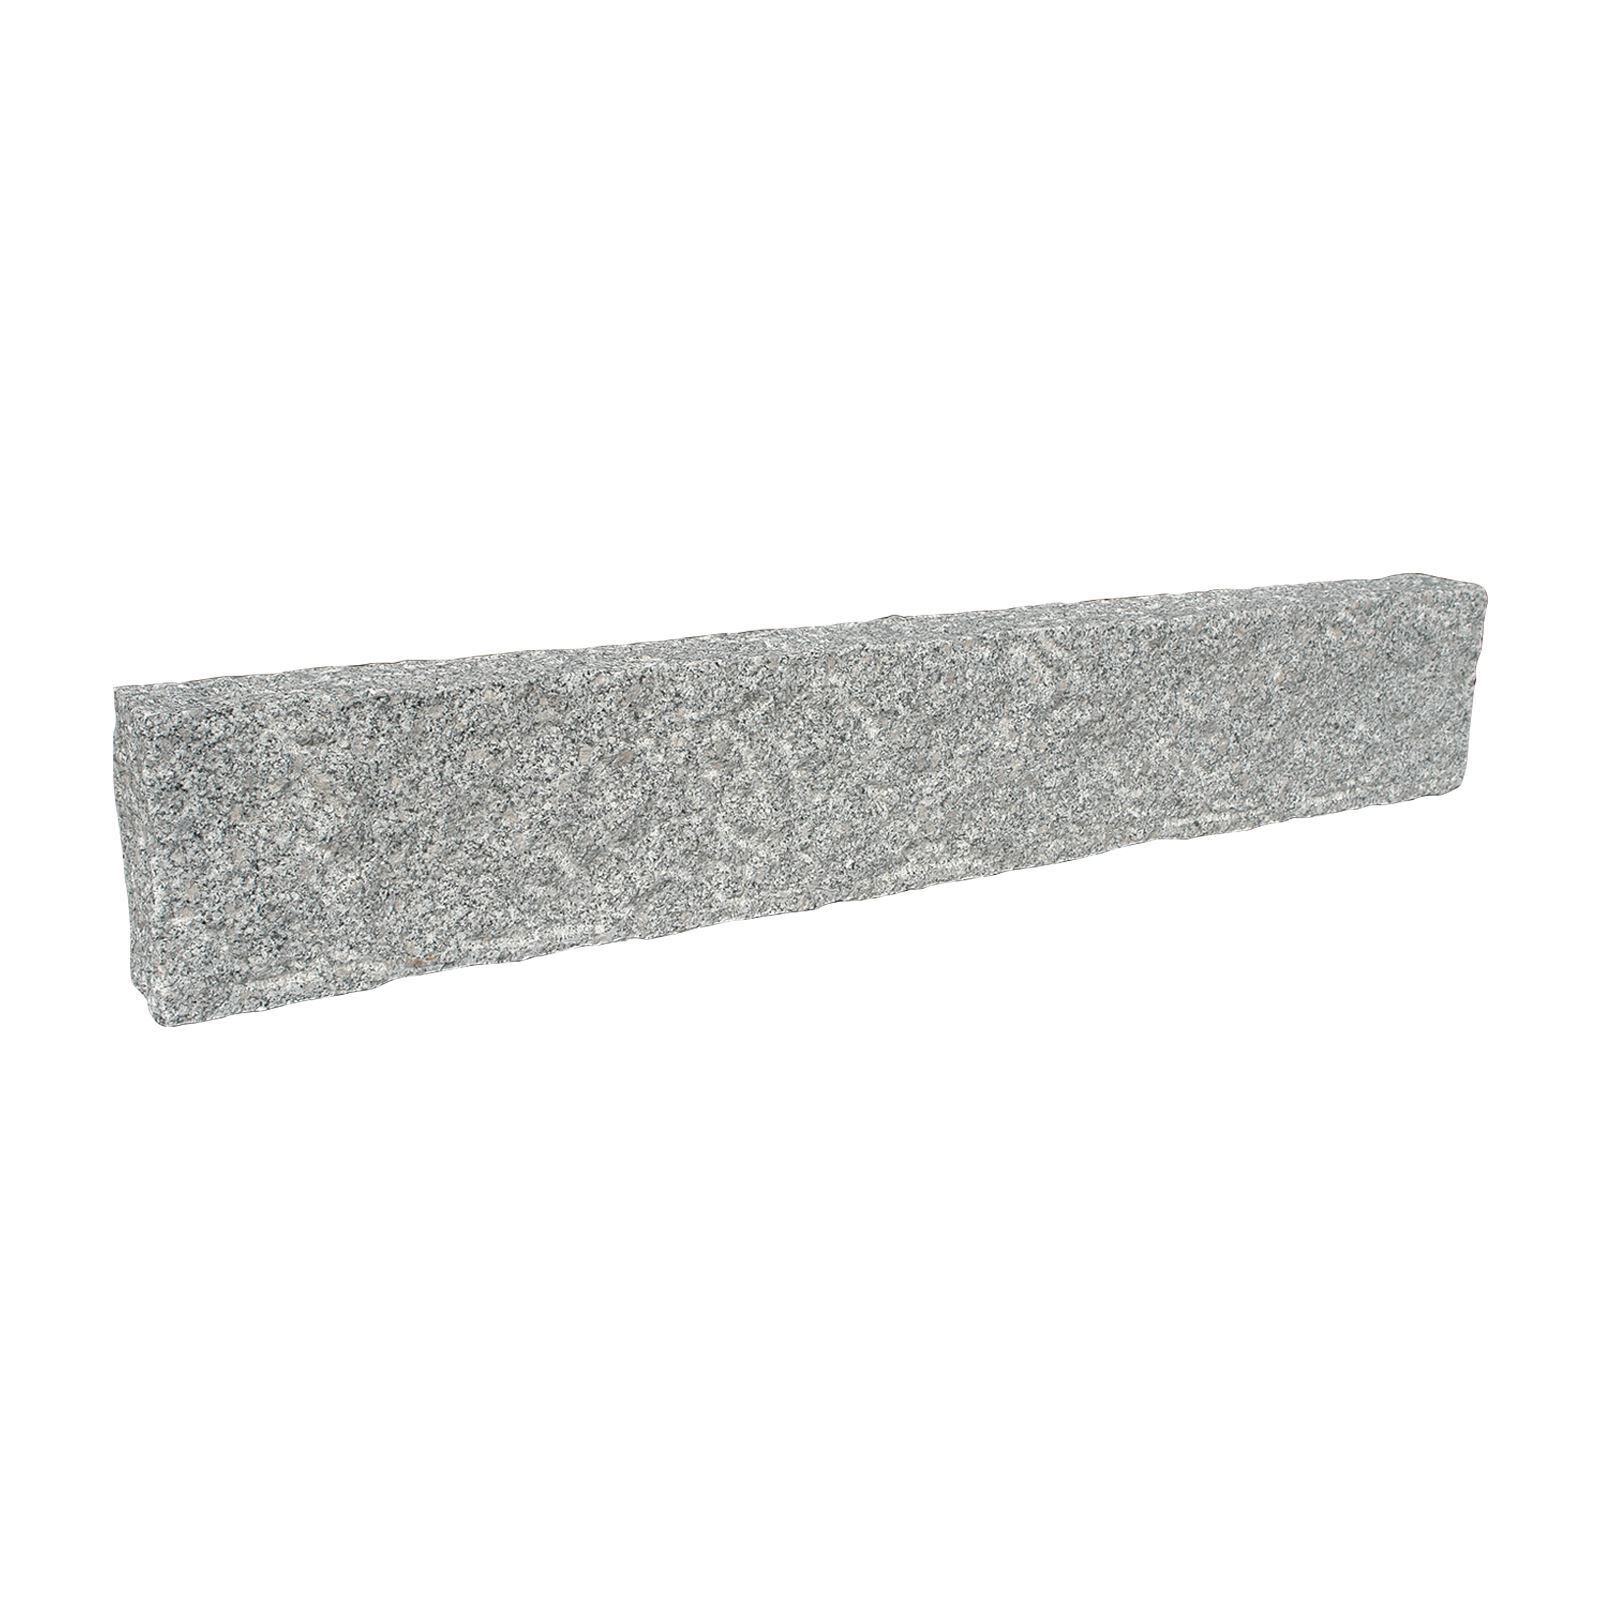 Granit-Stelen, grau, 12x25 cm, allseits gespitzt